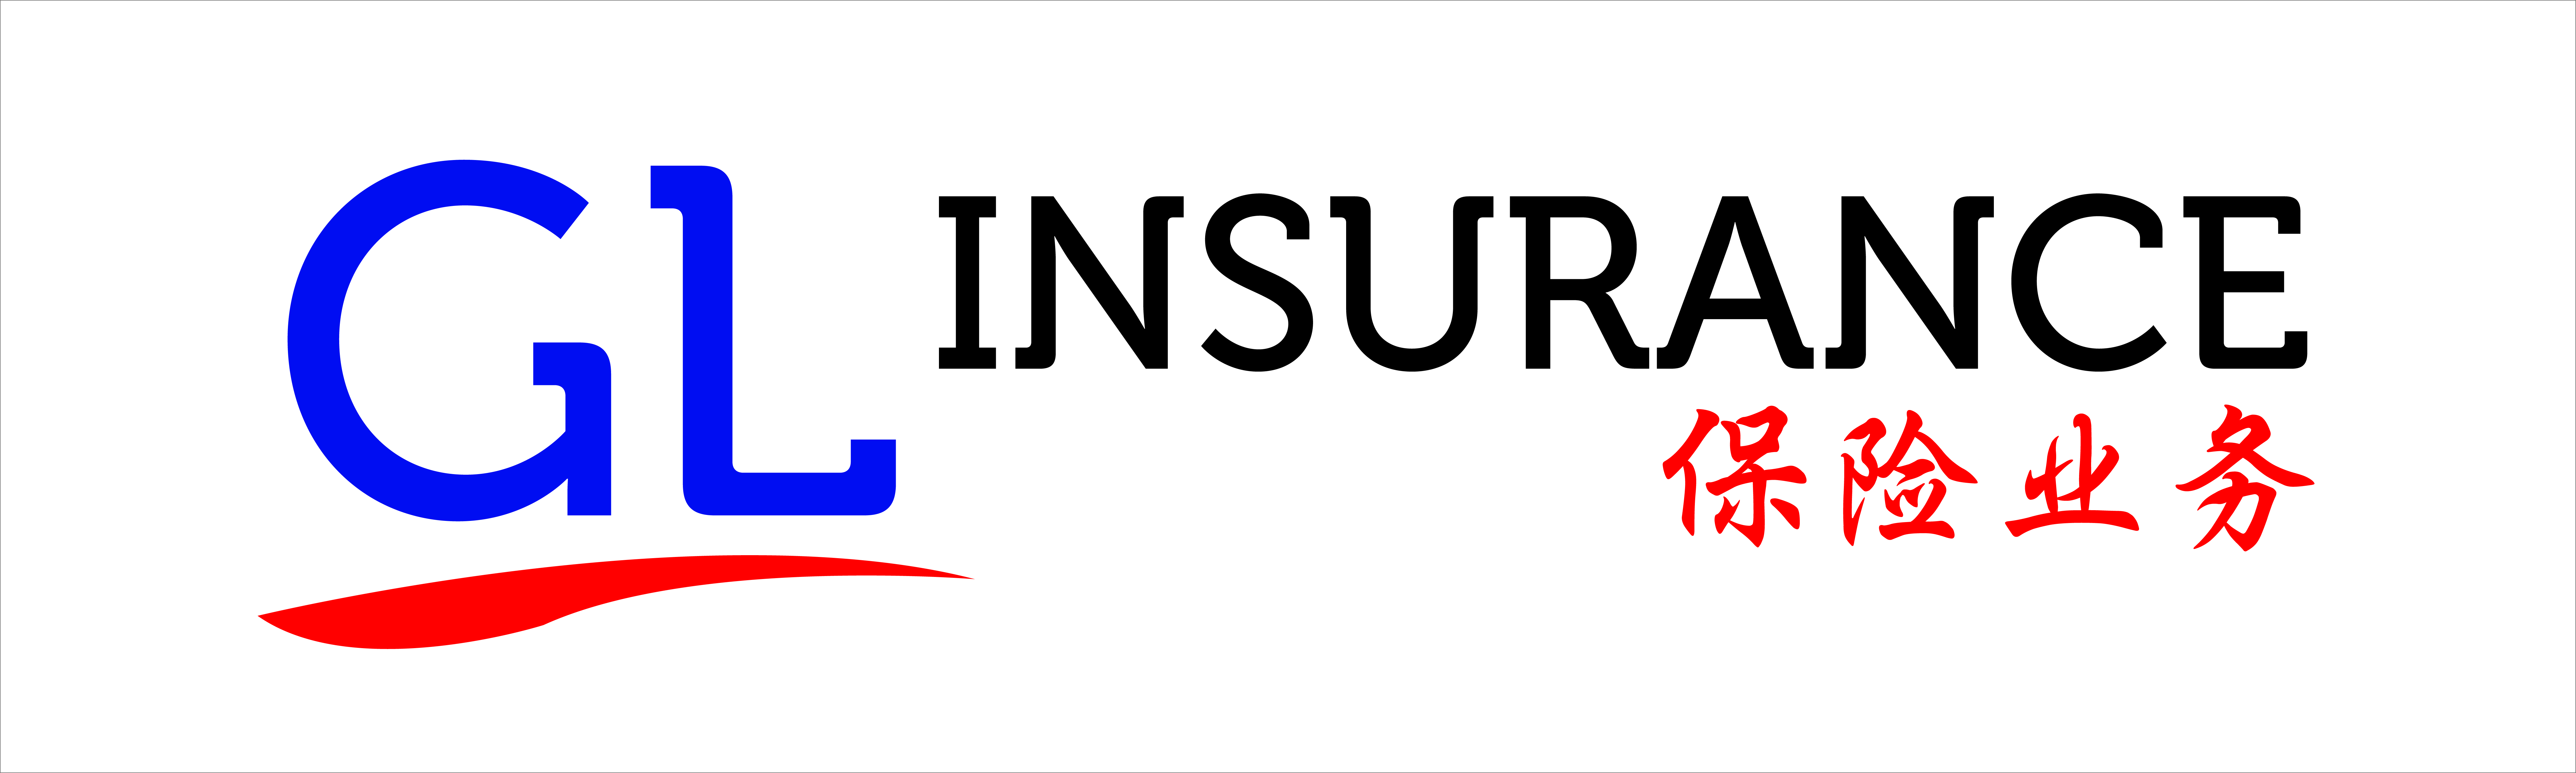 GL Insurance 3x10 ft.jpg